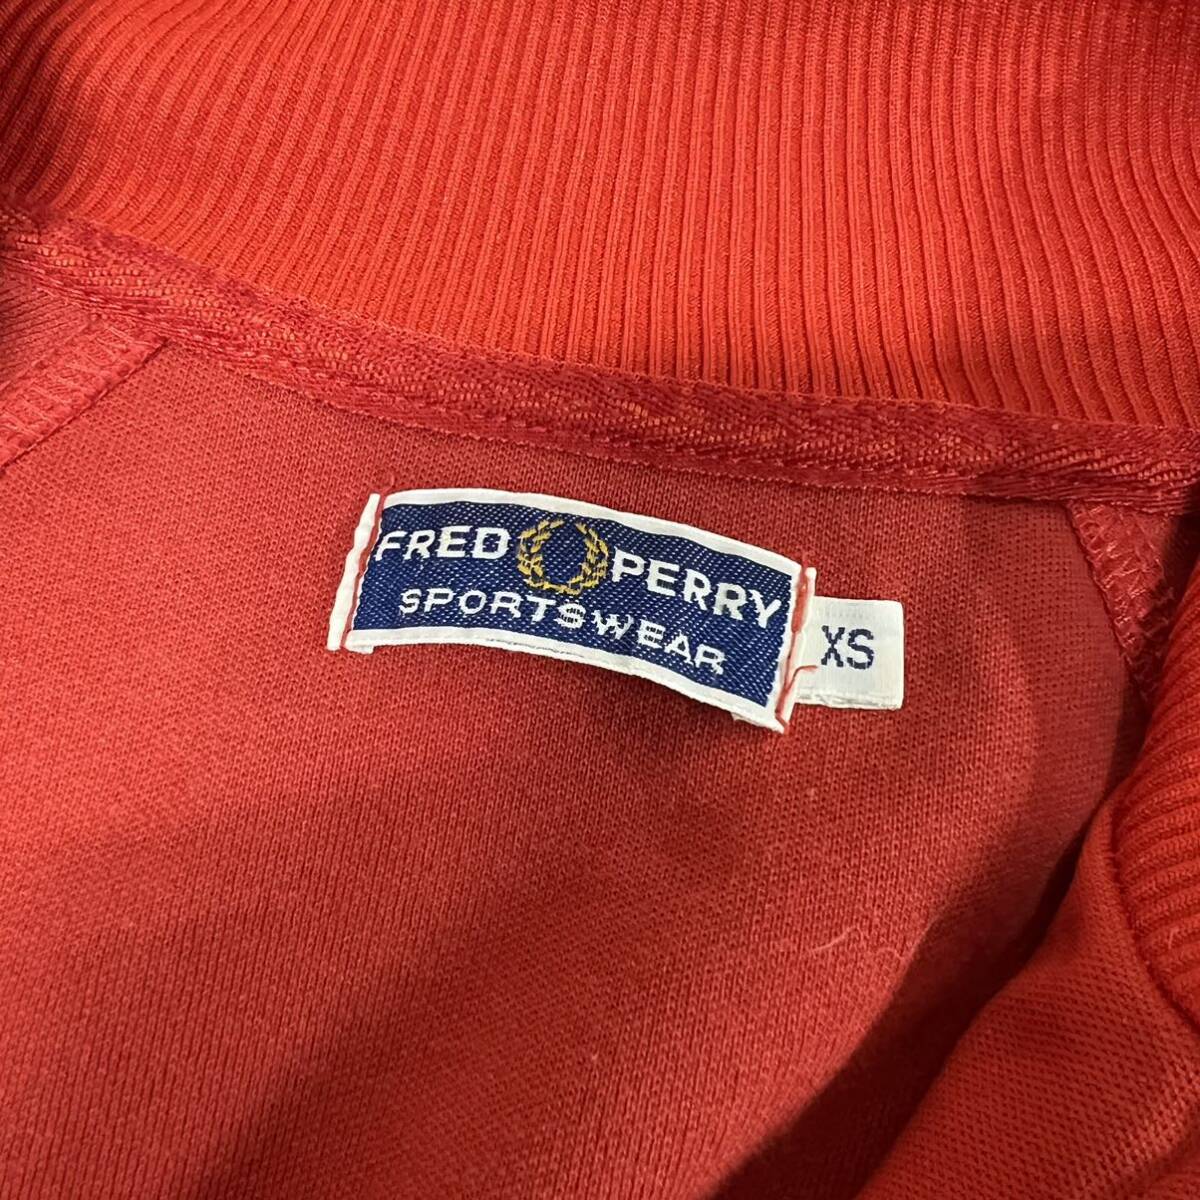 M3713 FRED PERRY フレッドペリー トラックジャケット XSサイズ 朱色 赤系 メンズ アウター 上着 羽織 フルジップ 長袖の画像3